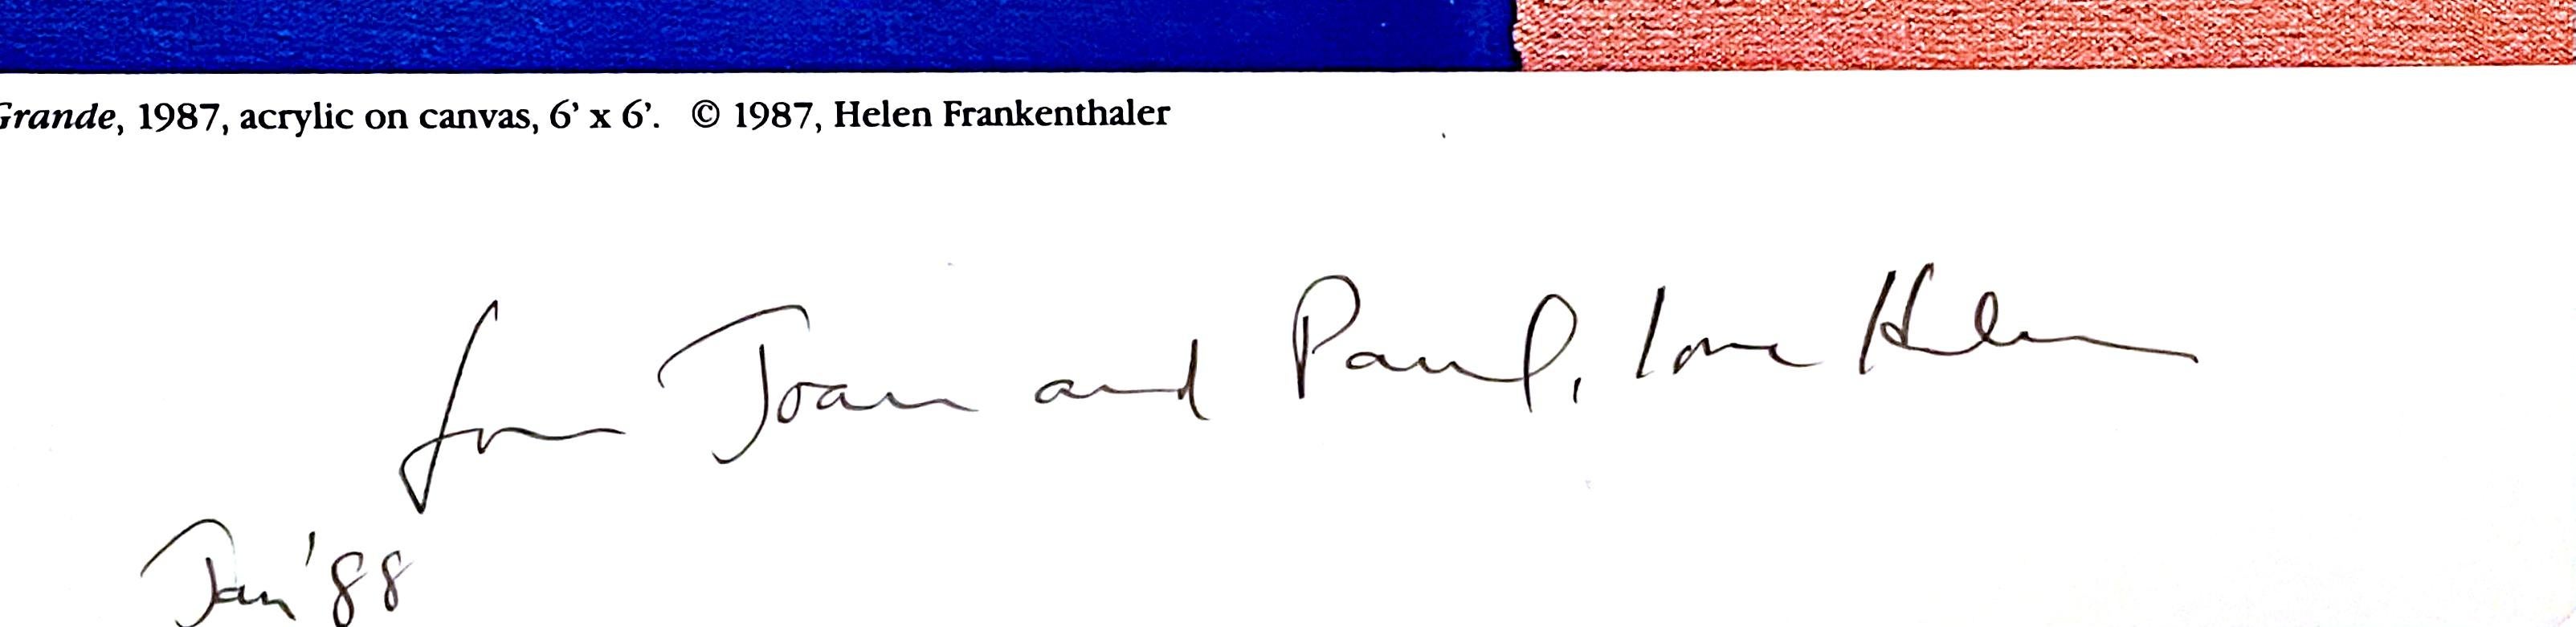 helen frankenthaler signed prints